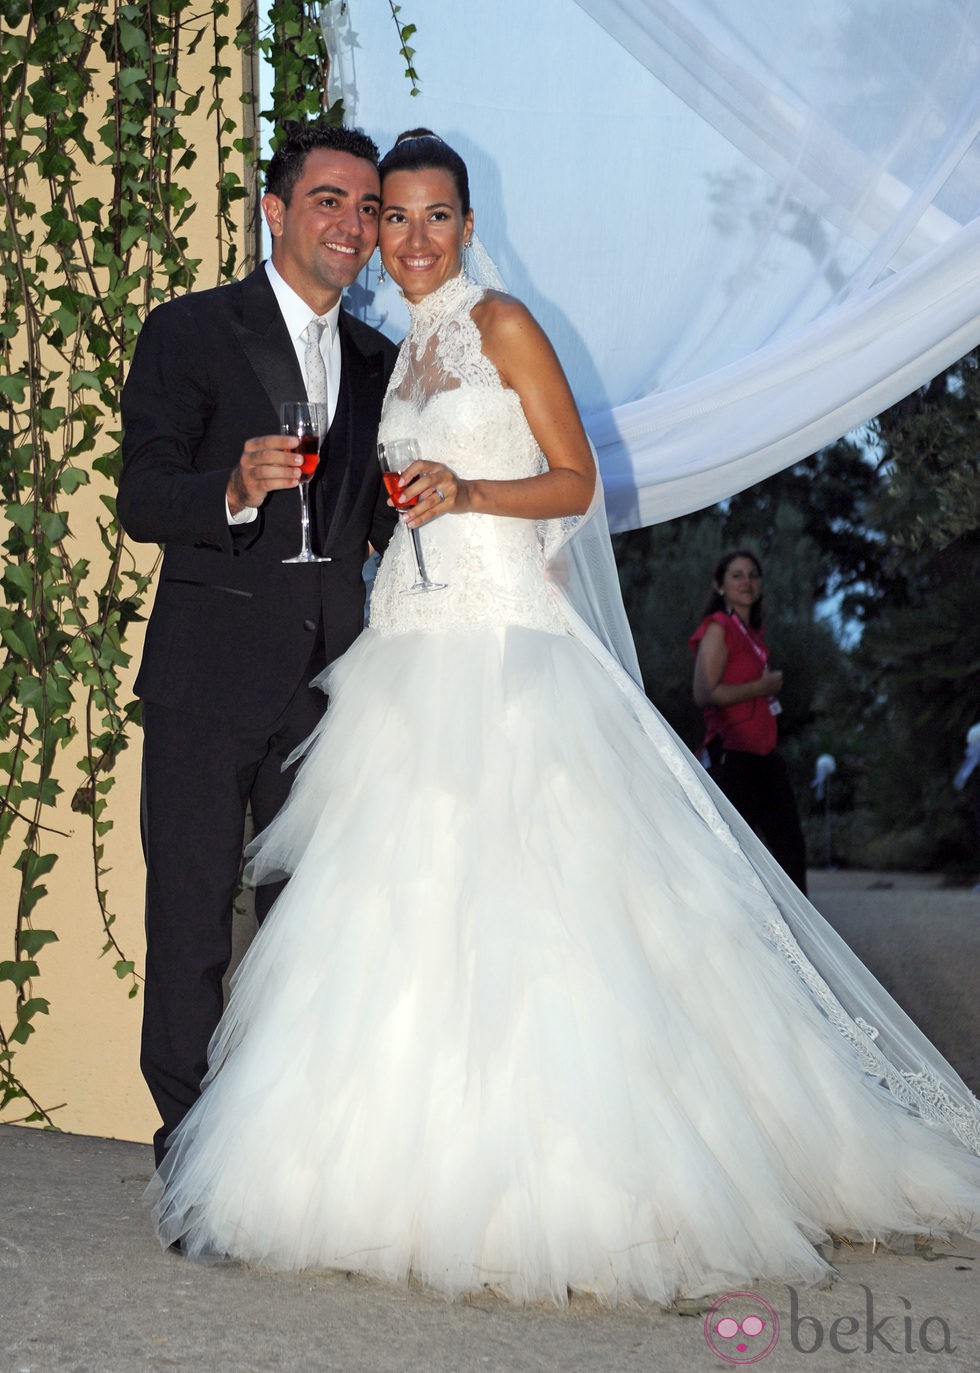 Xavi Hernández junto a su esposa Nuria Cunillera en su boda